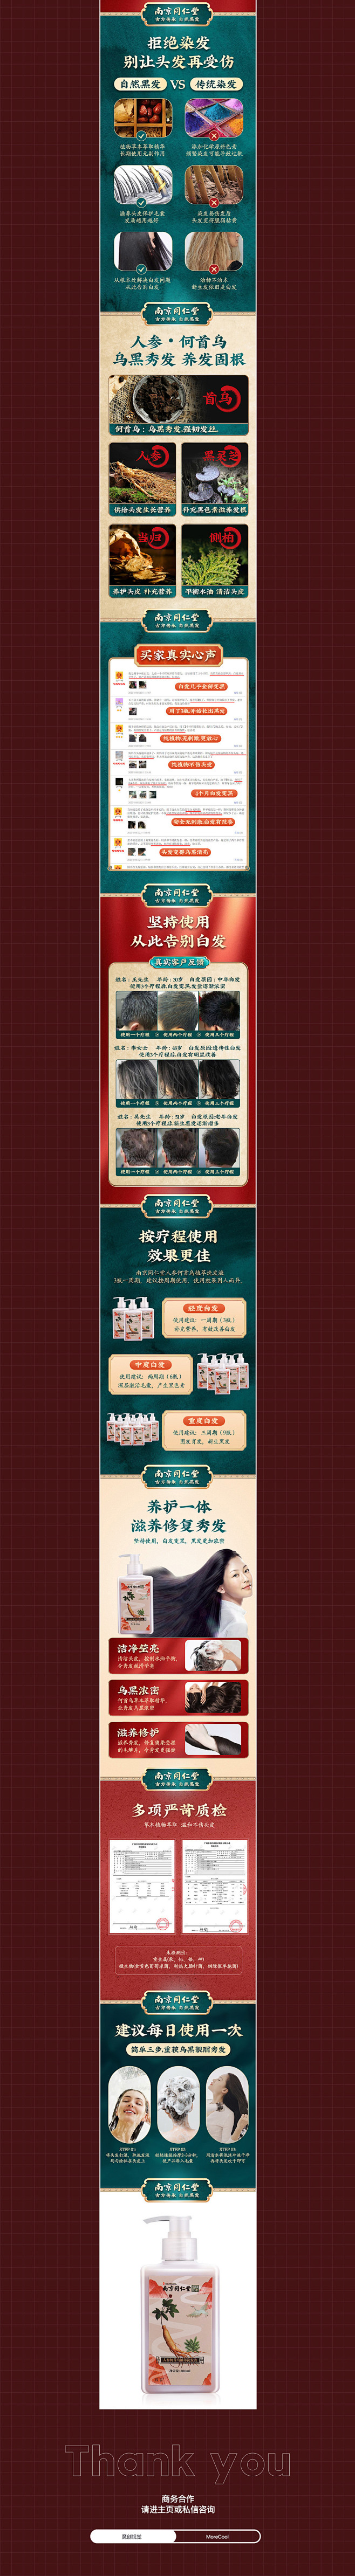 X3 国潮中国风 药妆类产品 详情页案例...